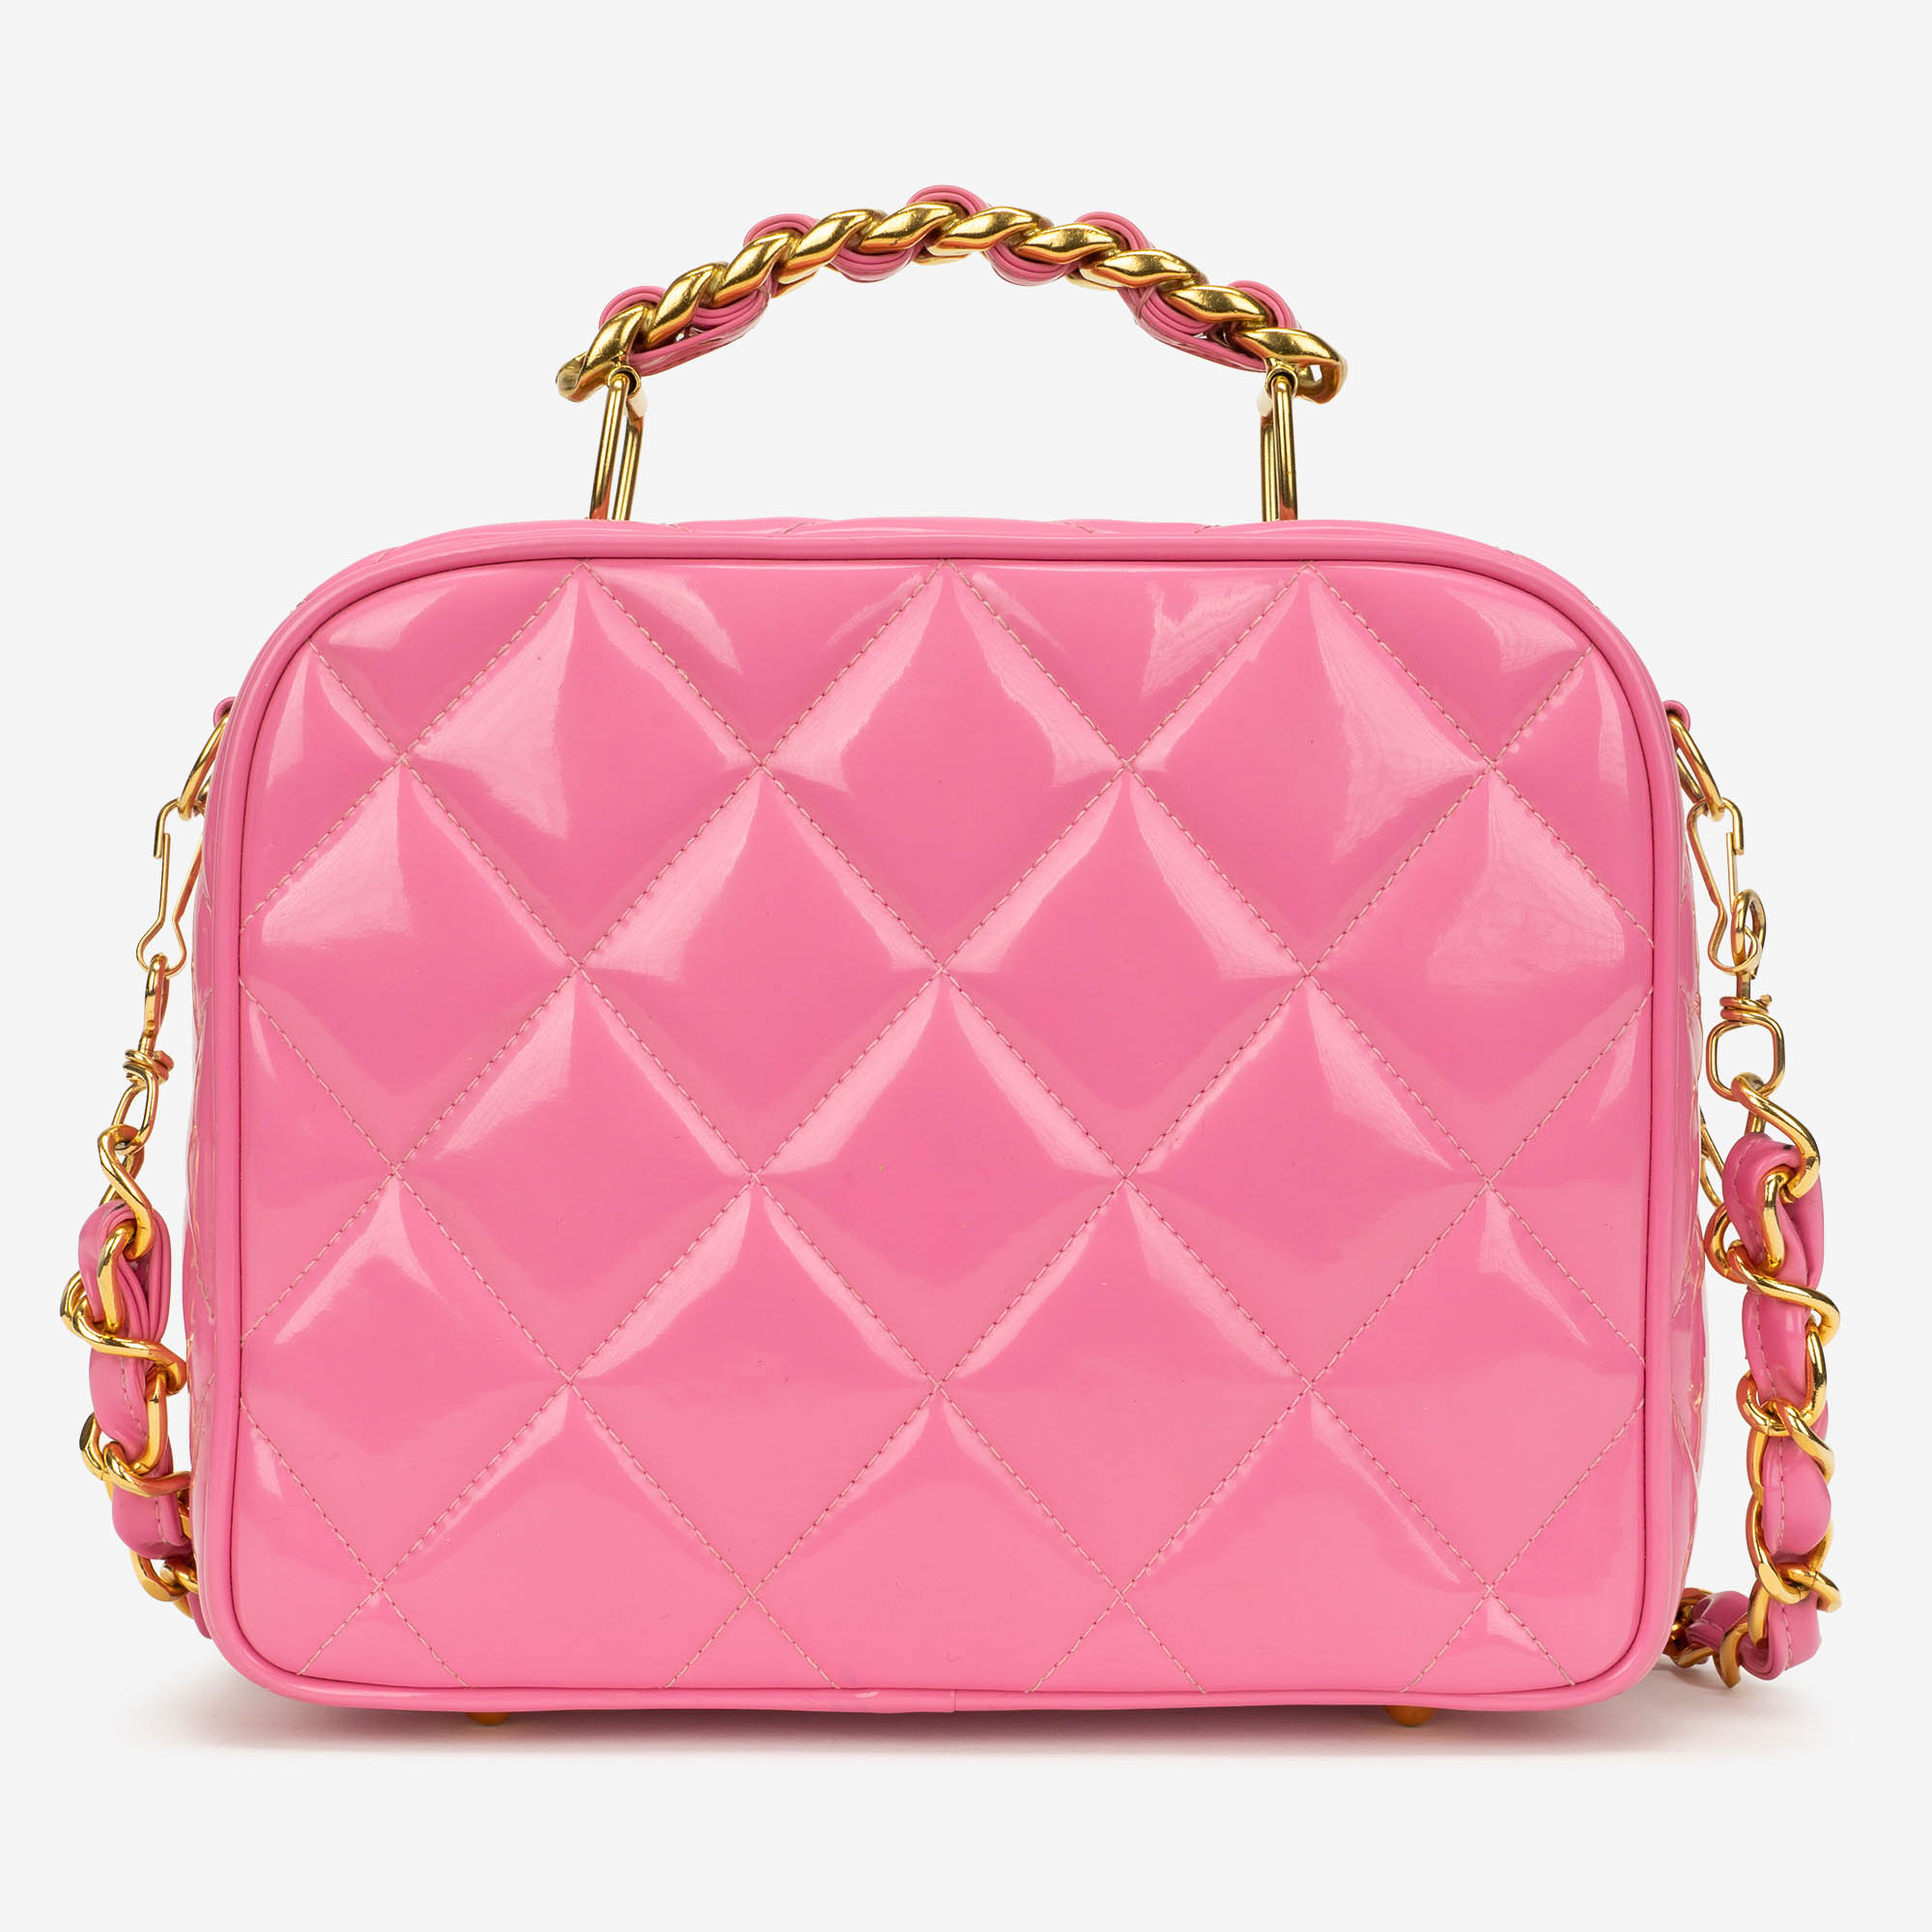 Chanel Vintage Vanity Case Patent Leather Pink Backside